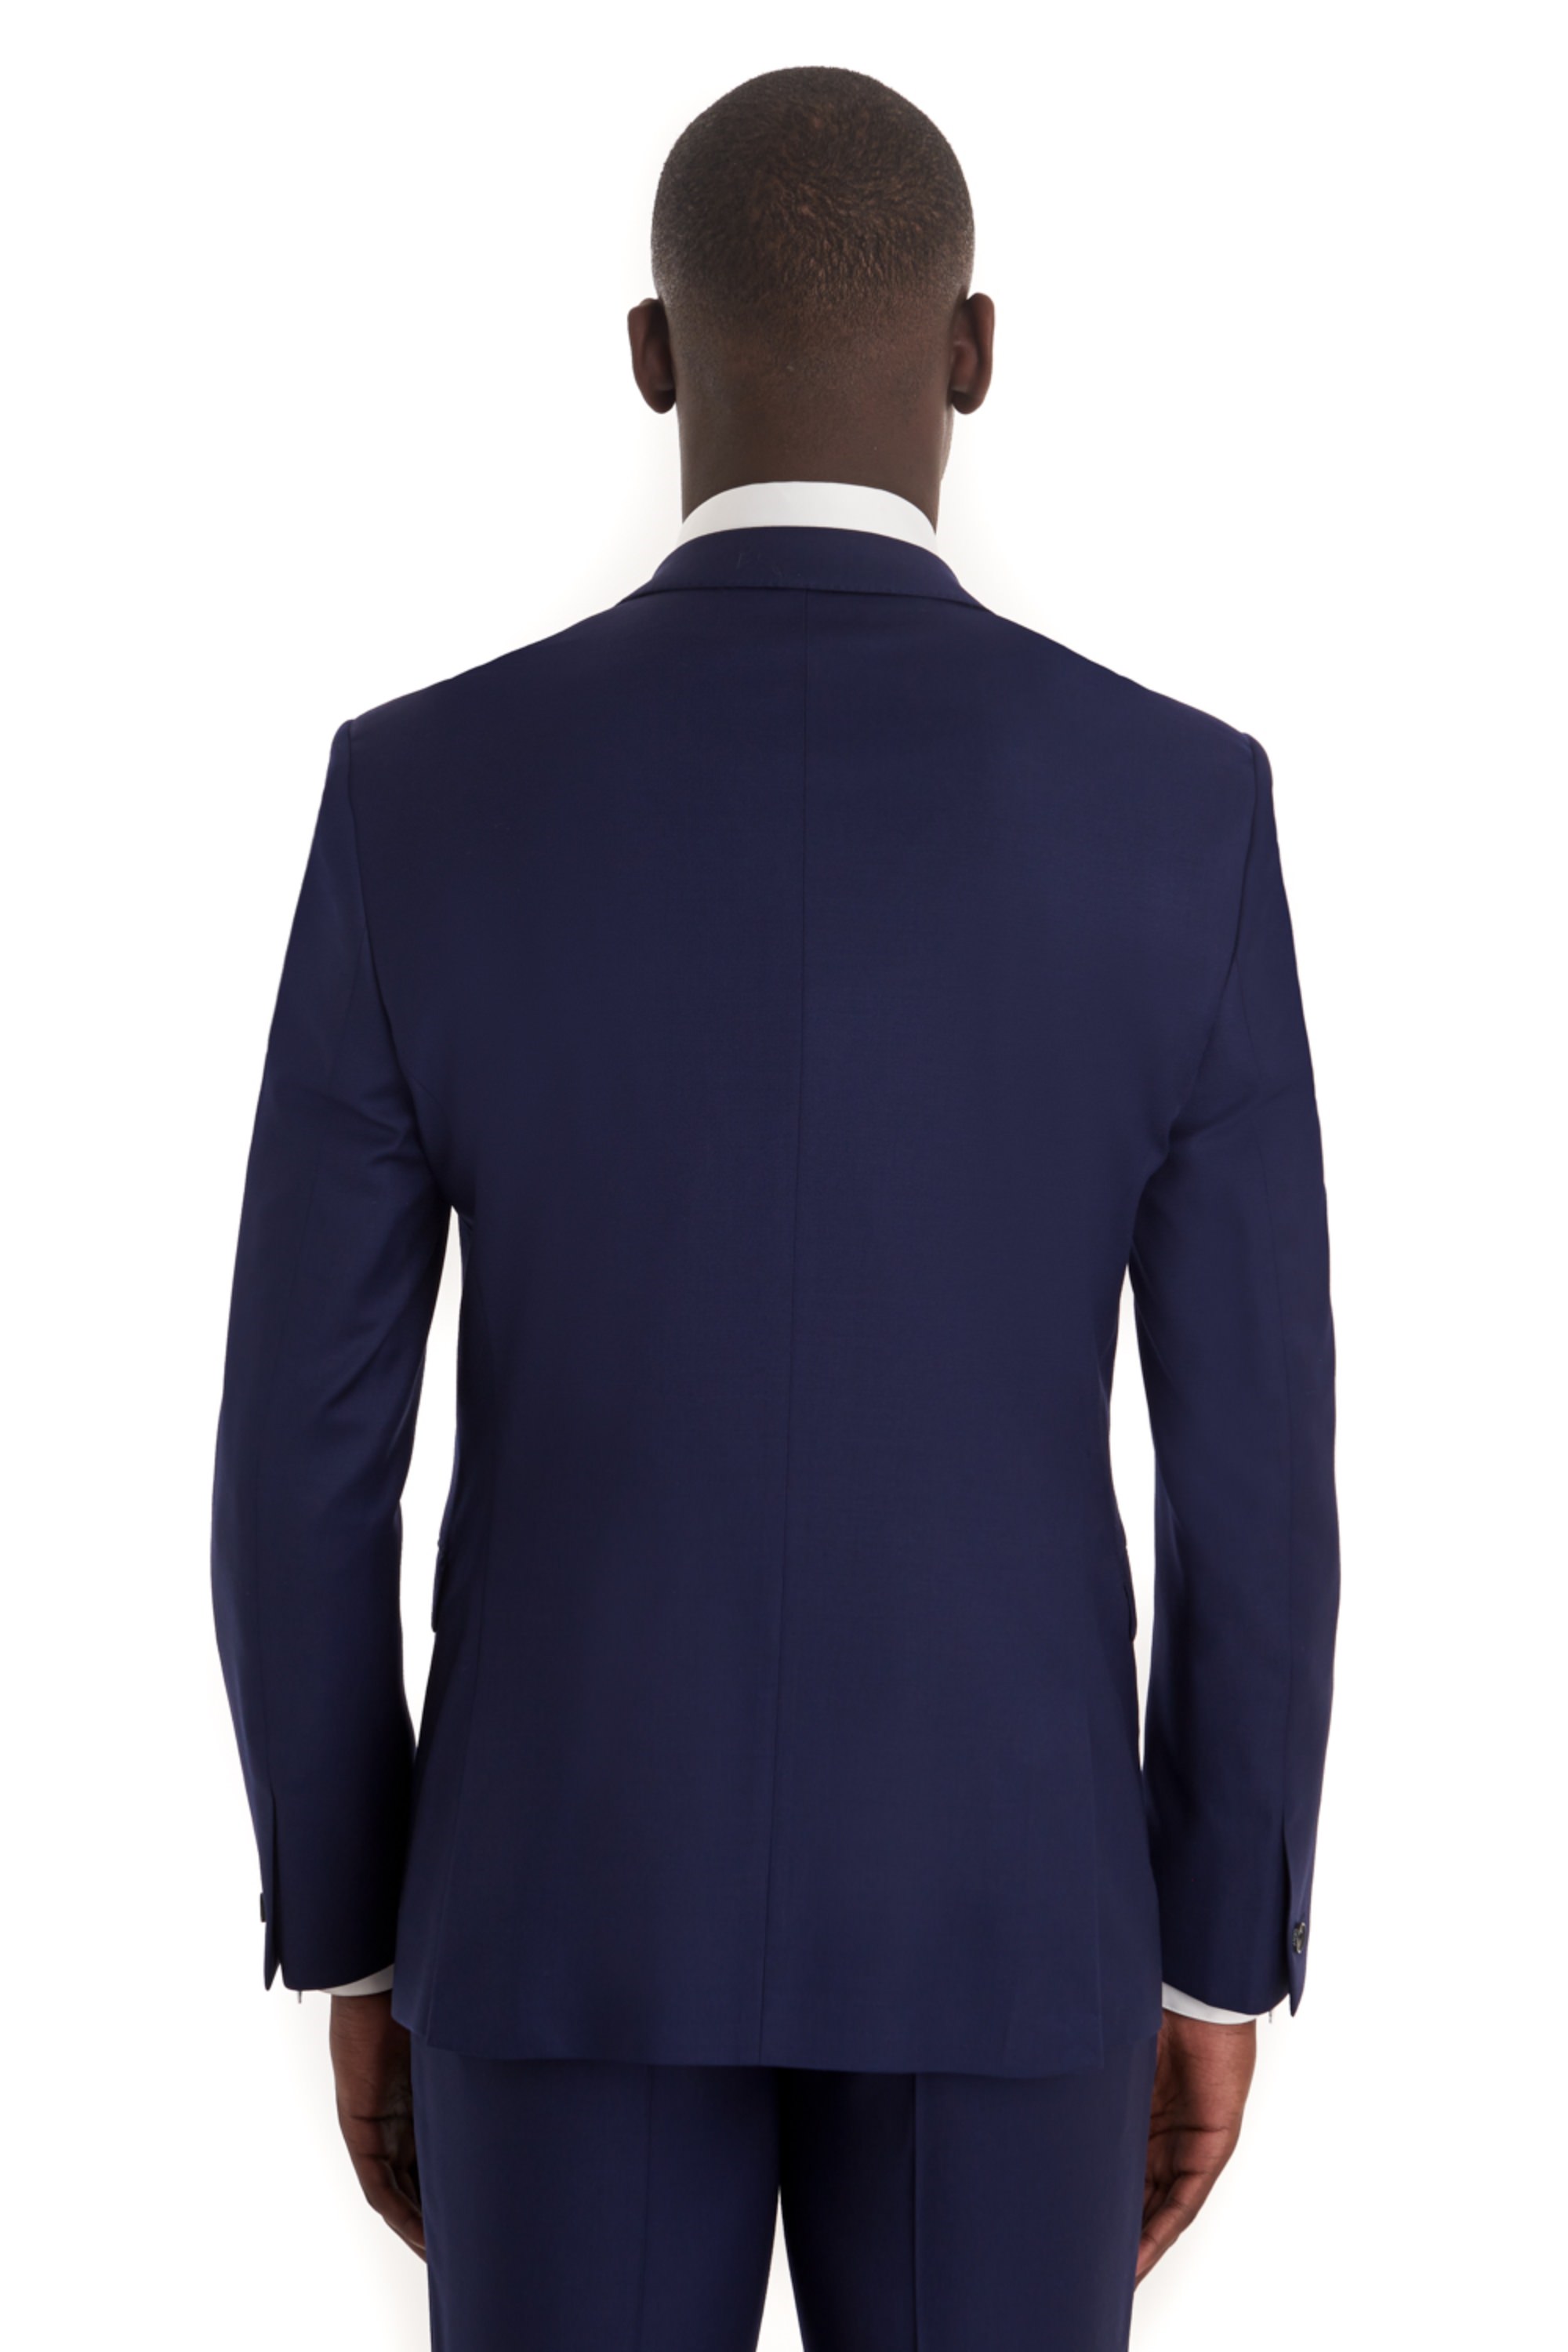 DKNY Slim Fit Plain Blue Suit